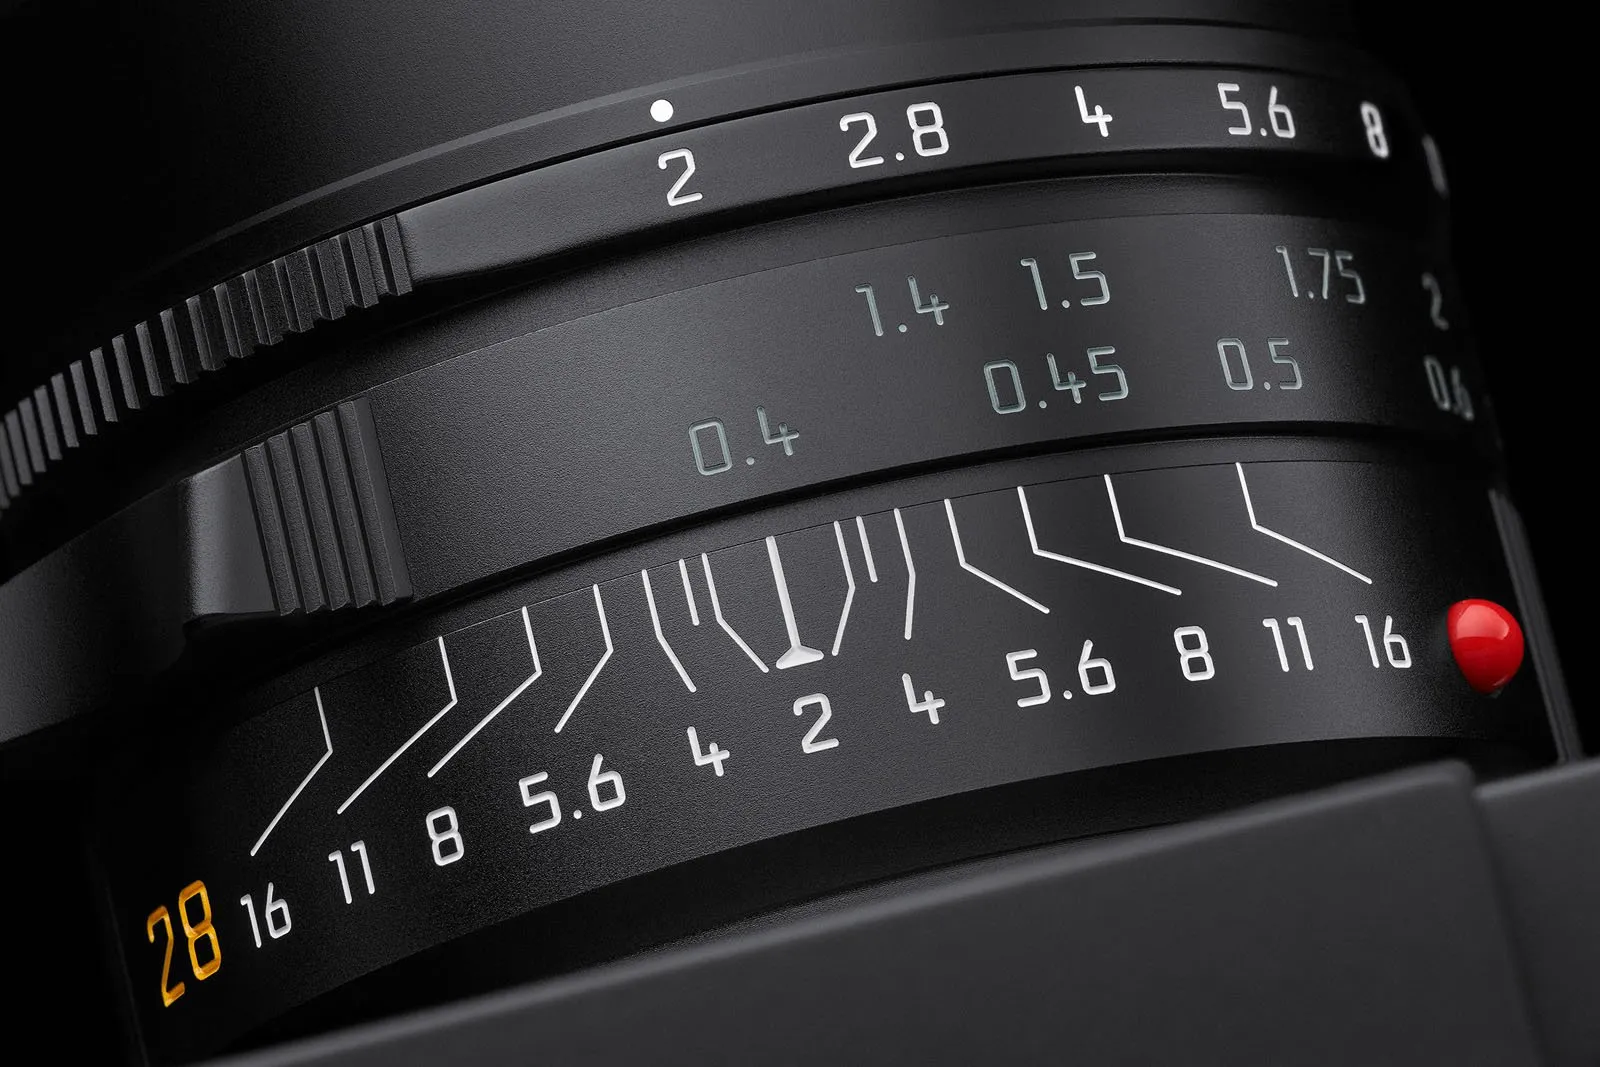 Leica ra mắt máy ảnh Leica M11-P, chiếc máy ảnh tích hợp các thông tin chứng thực nội dung đầu tiên trên thế giới